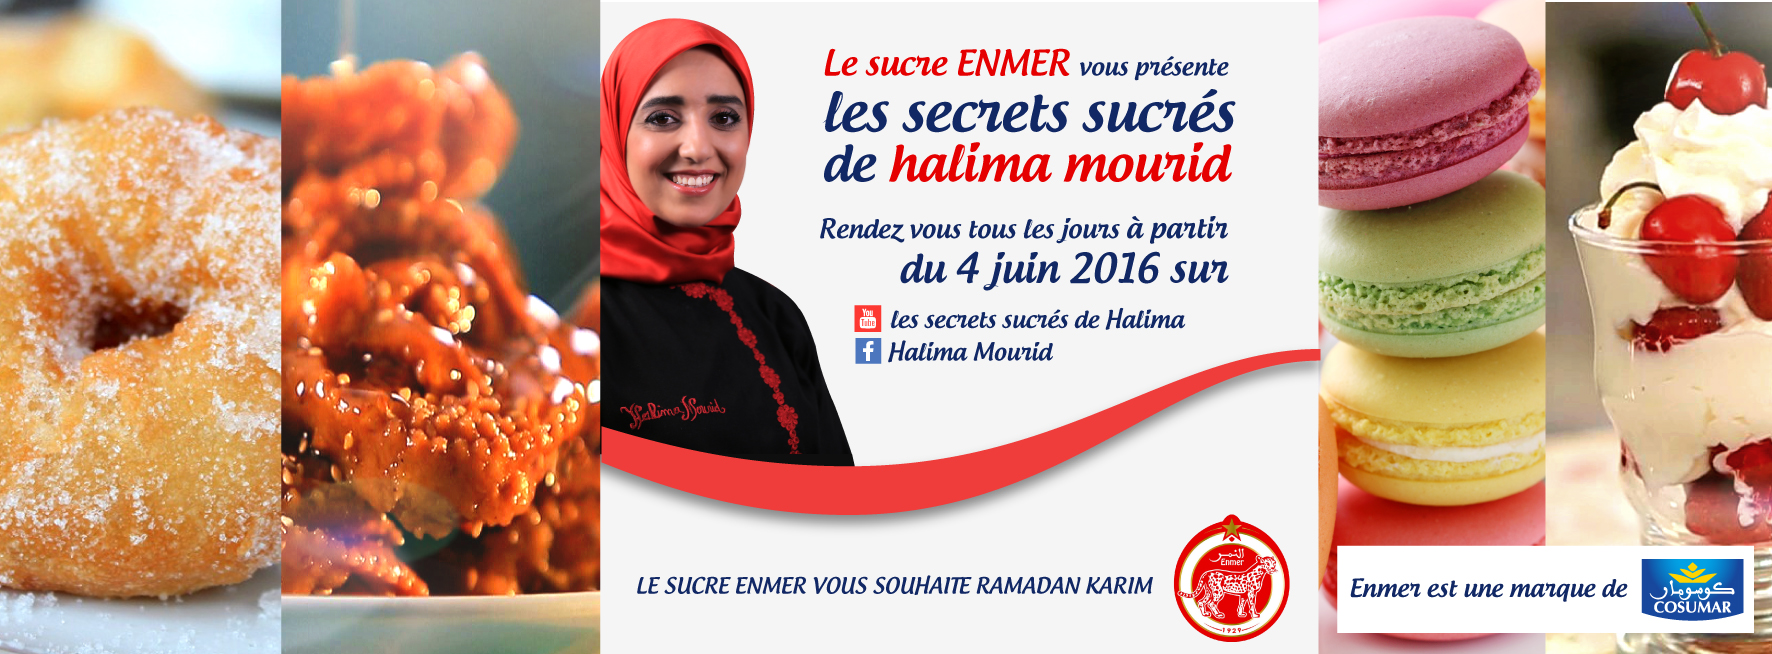 Ramadan : Cosumar lance la série "Les secrets sucrés de Halima"